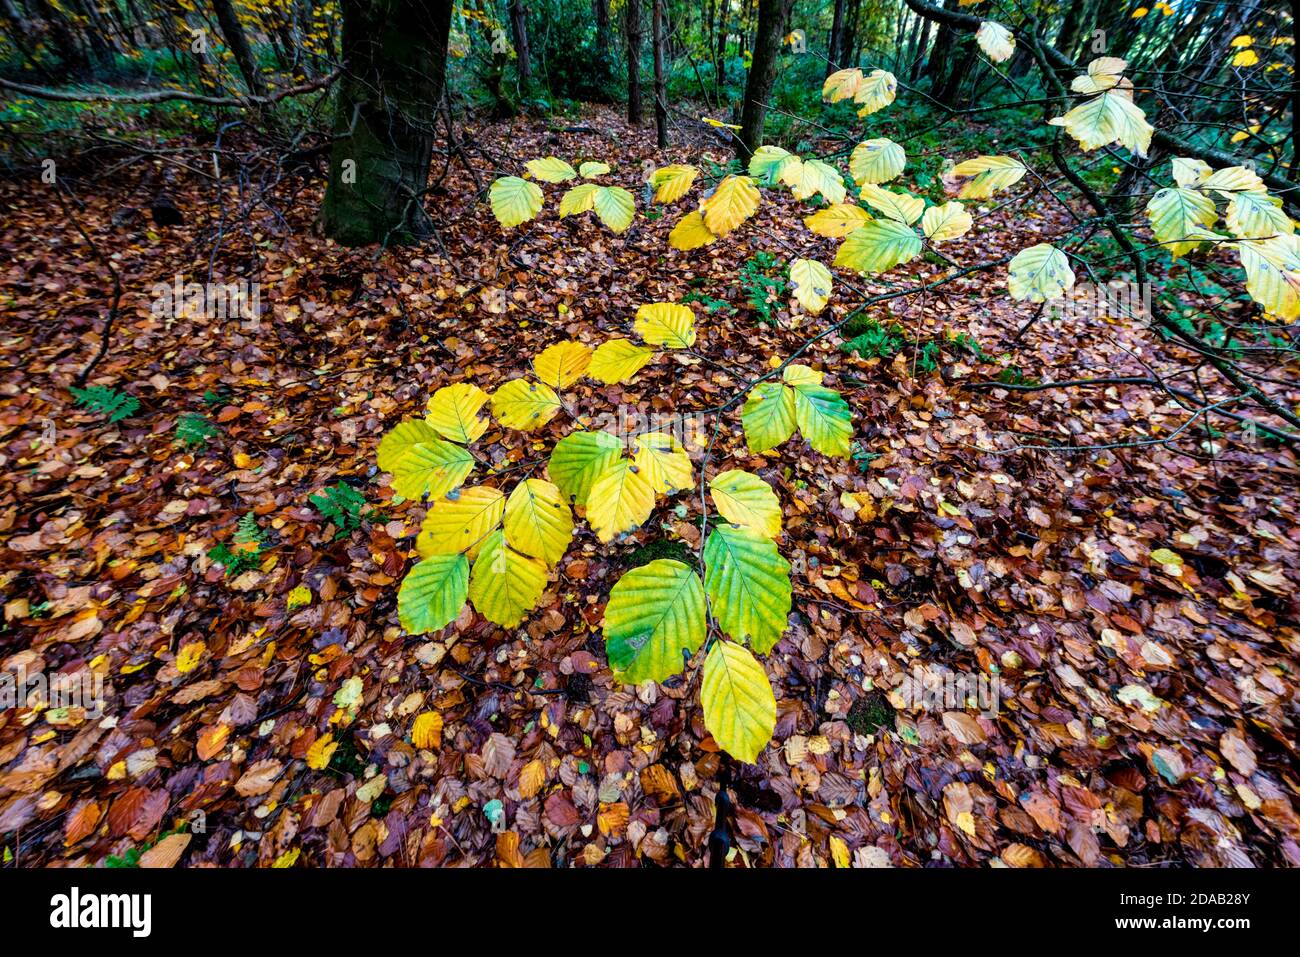 Branche d'arbre d'automne parmi les feuilles dans un cadre boisé. Blidworth Woods Notinghamshire Angleterre Royaume-Uni Banque D'Images